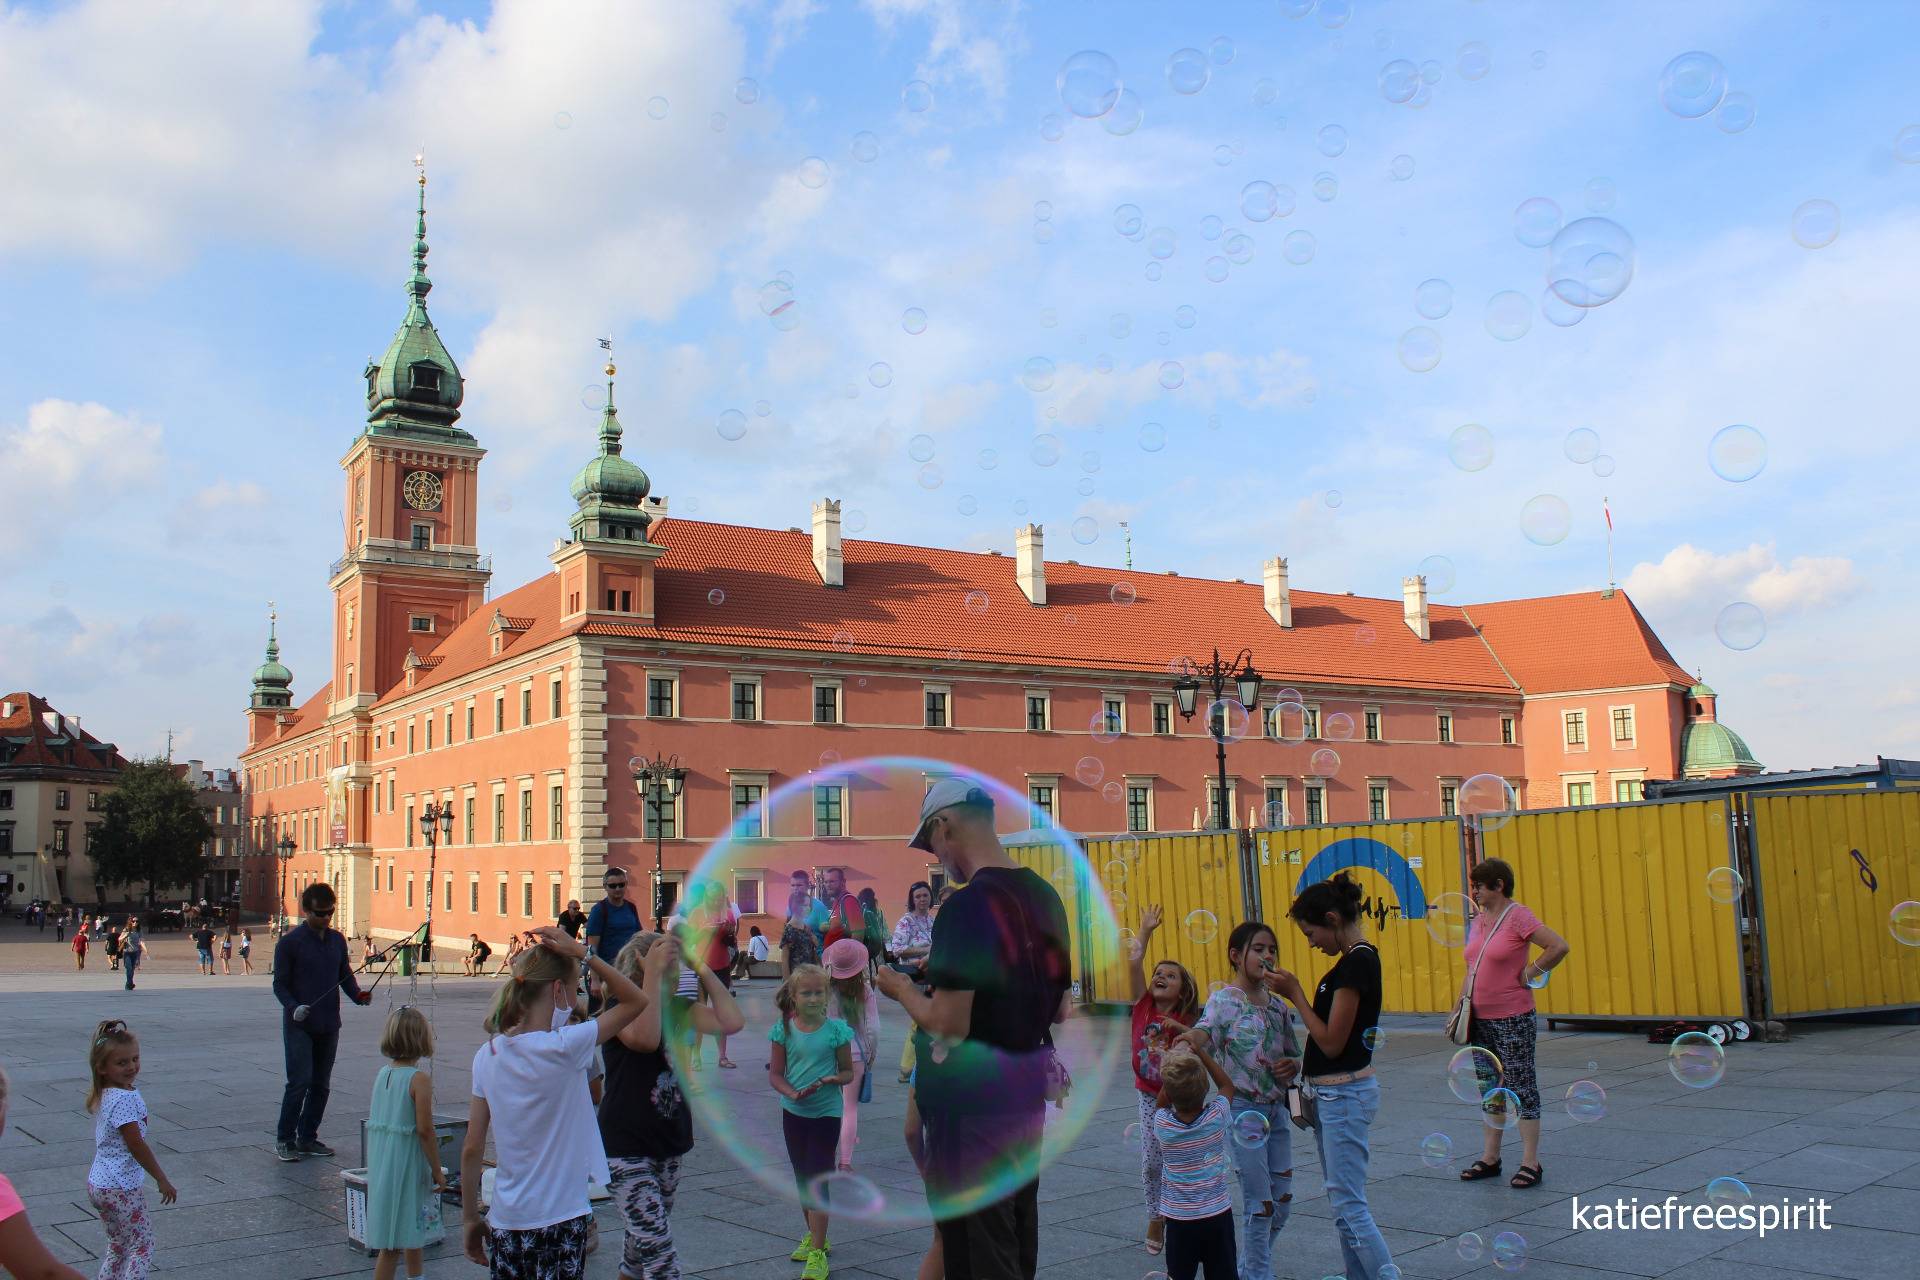 The Royal Castle in Warsaw, in a bubble frame // Zamek Królewski w Warszawie, w bańkowej oprawie